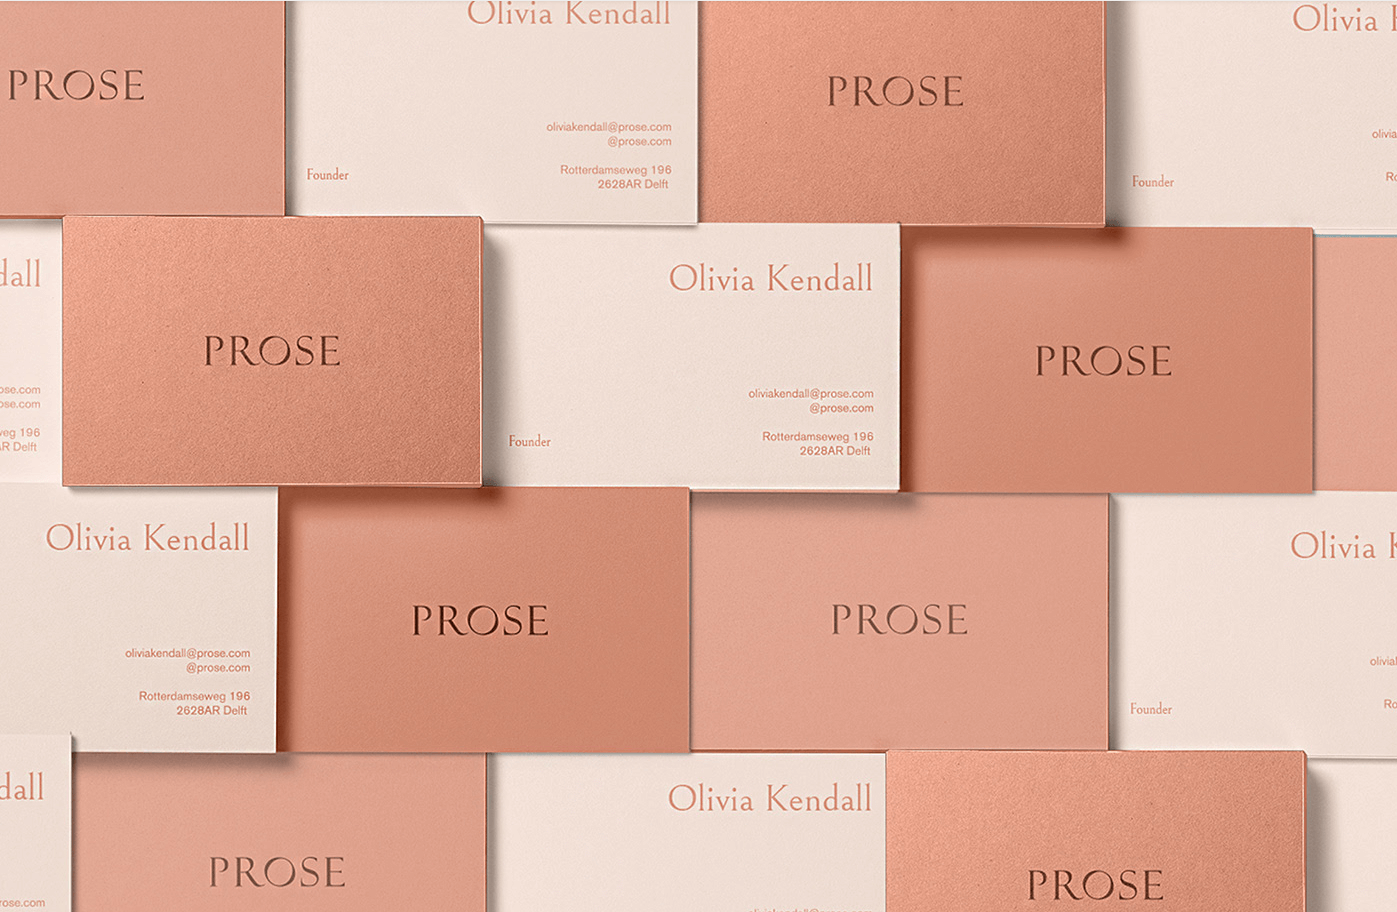 visuels de cartes de visite par la marque Prose dans les tons beiges rosés